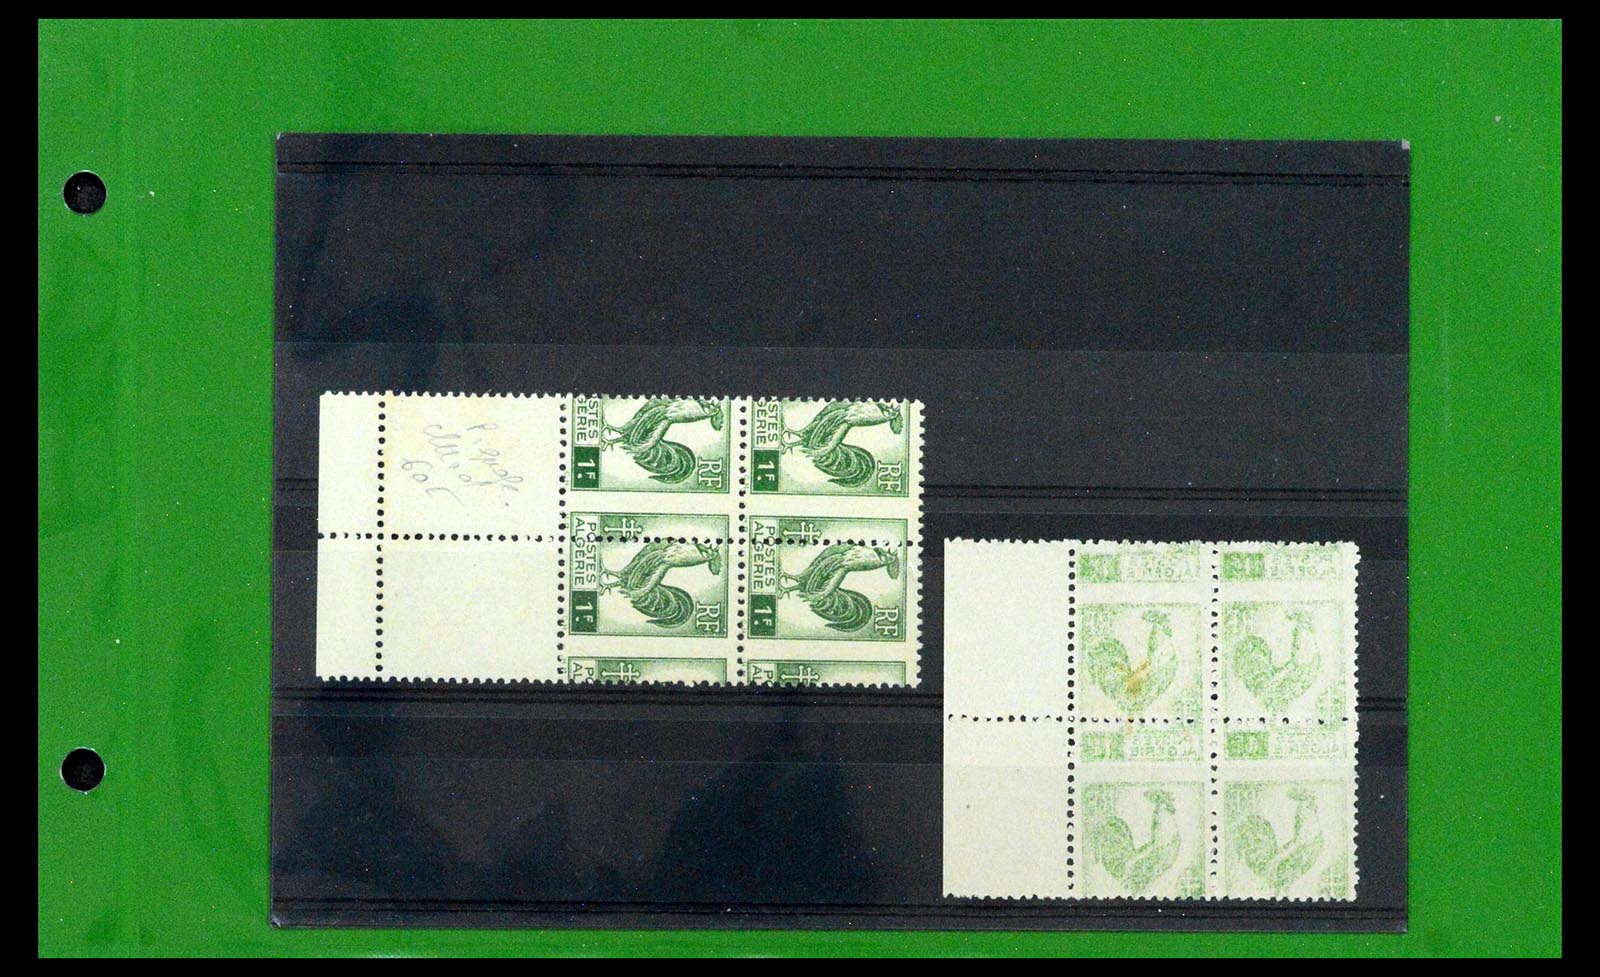 39114 0003 - Stamp collection 39114 Algeria varieties 1926-1950.